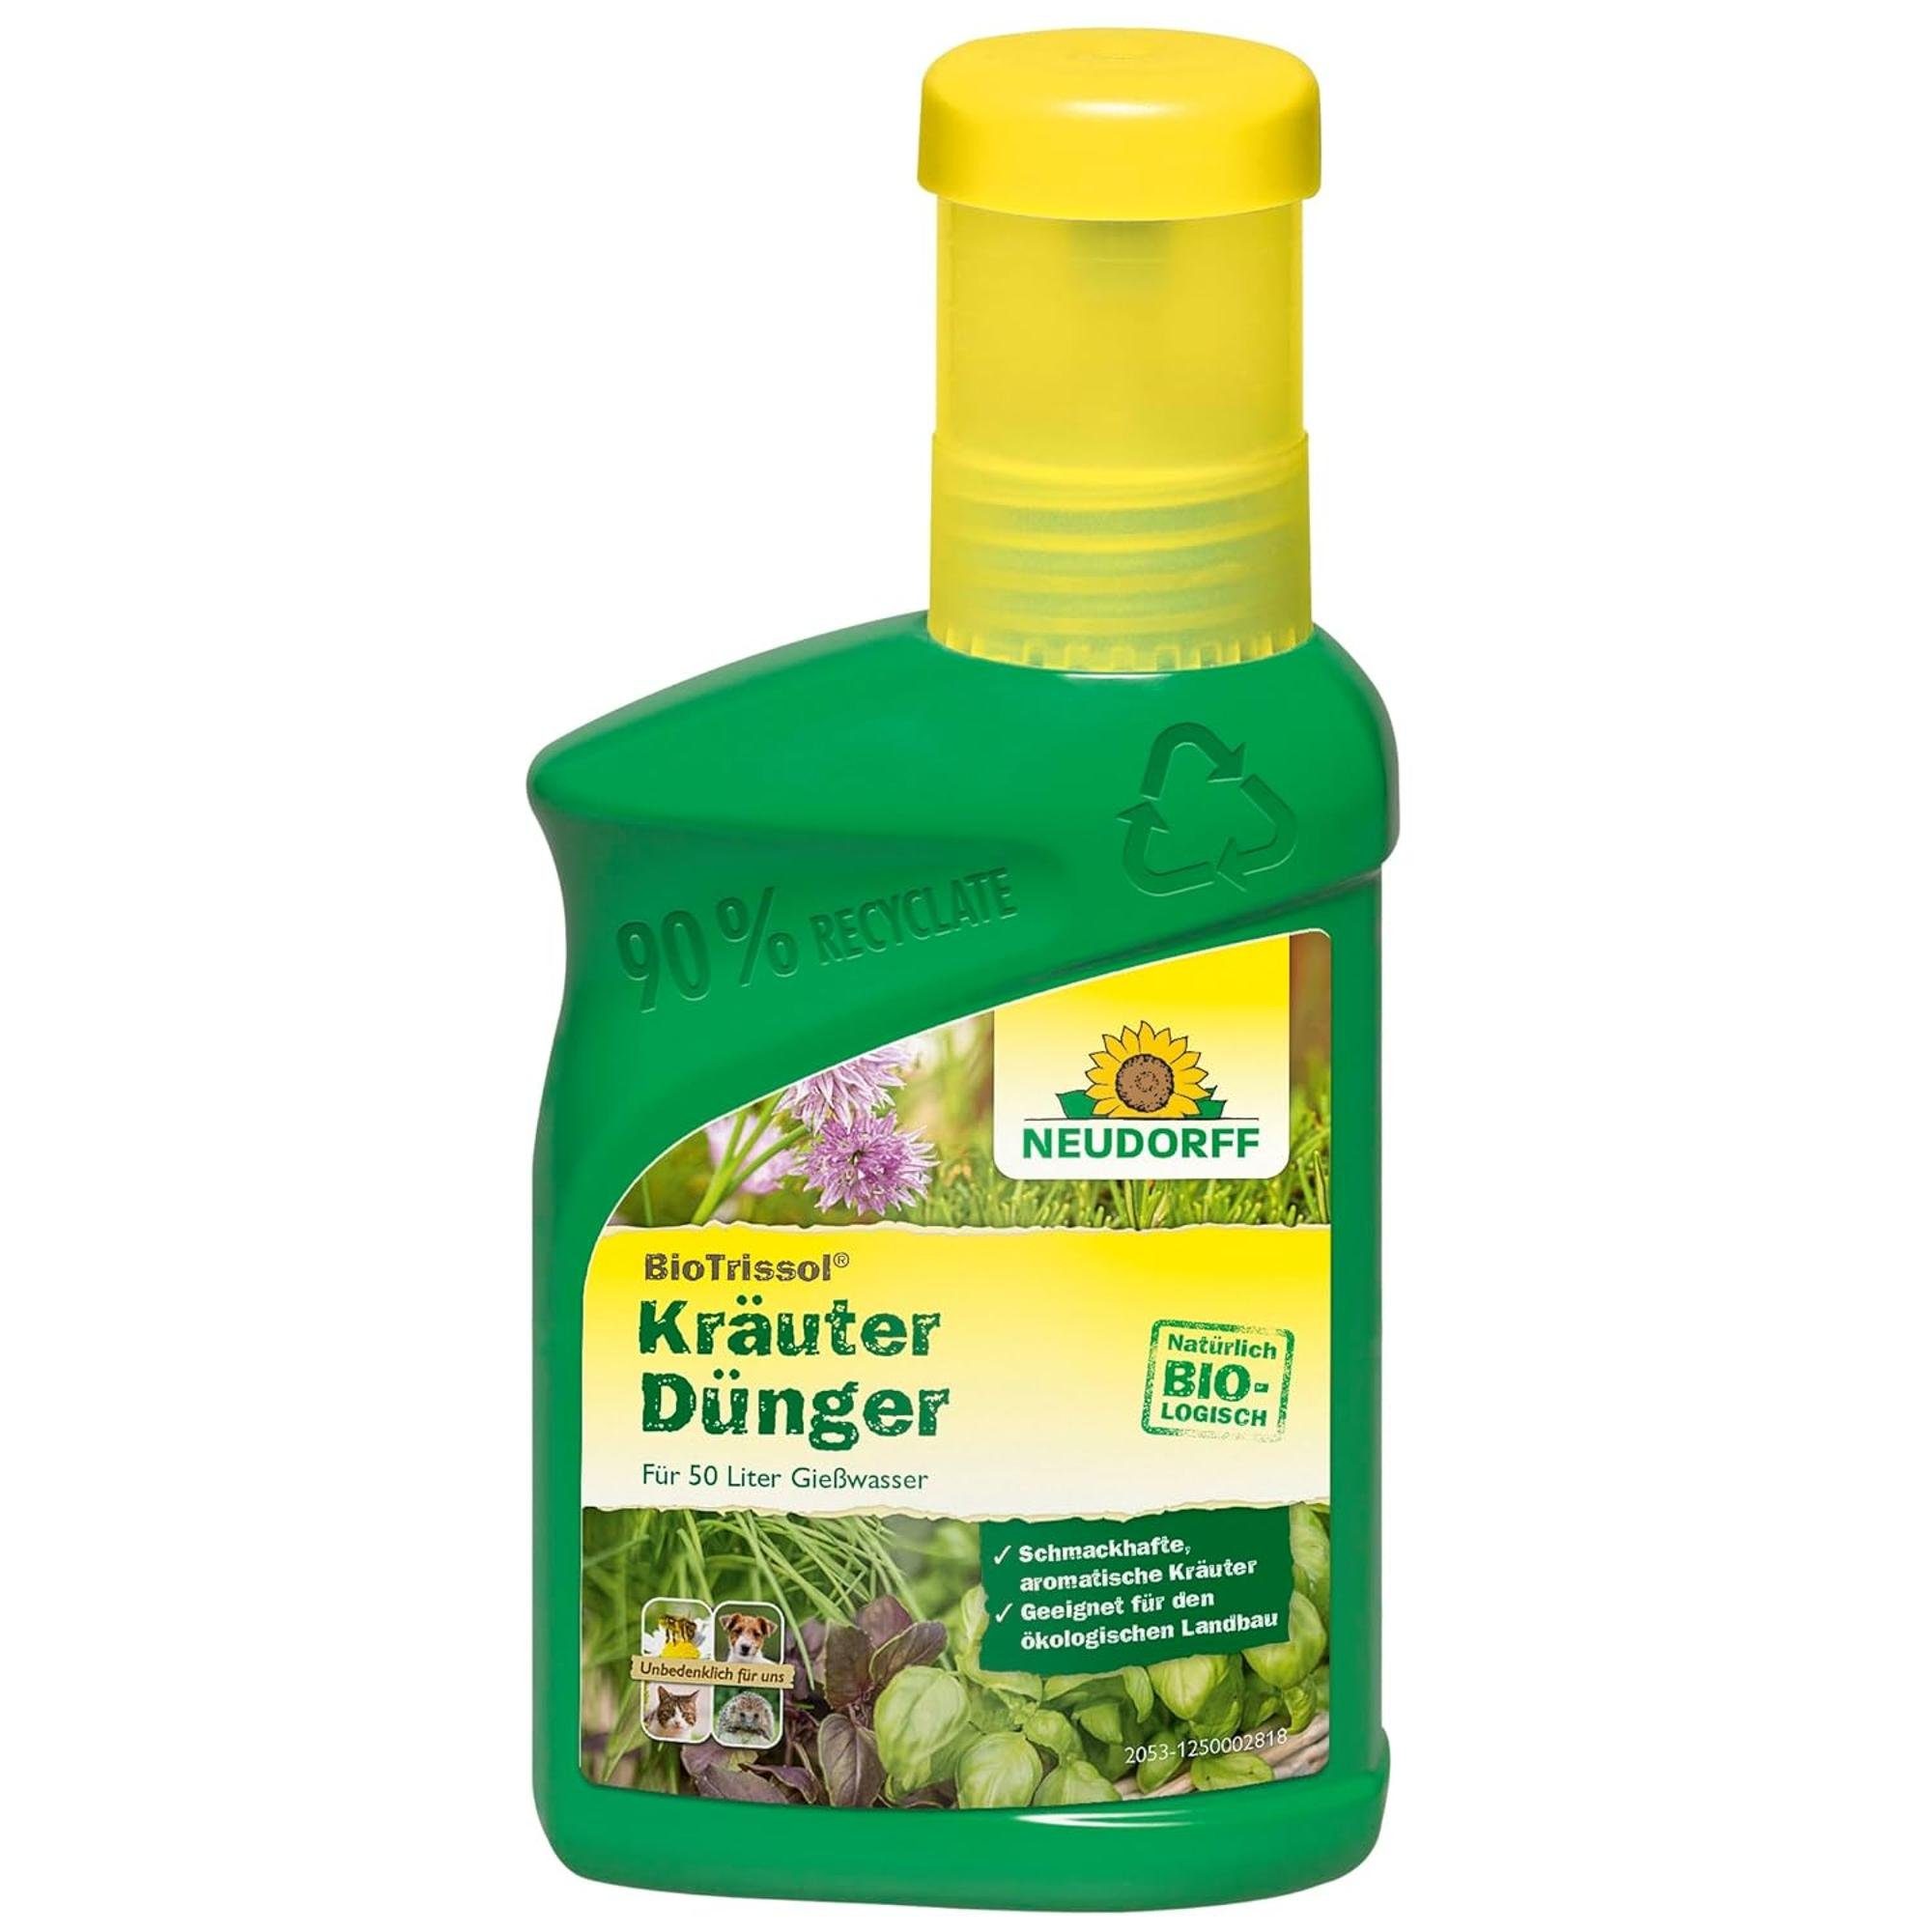 Neudorff Kräuterdünger BioTrissol Kräuterdünger, 250 ml, für schmackhafte, aromatische Kräuter